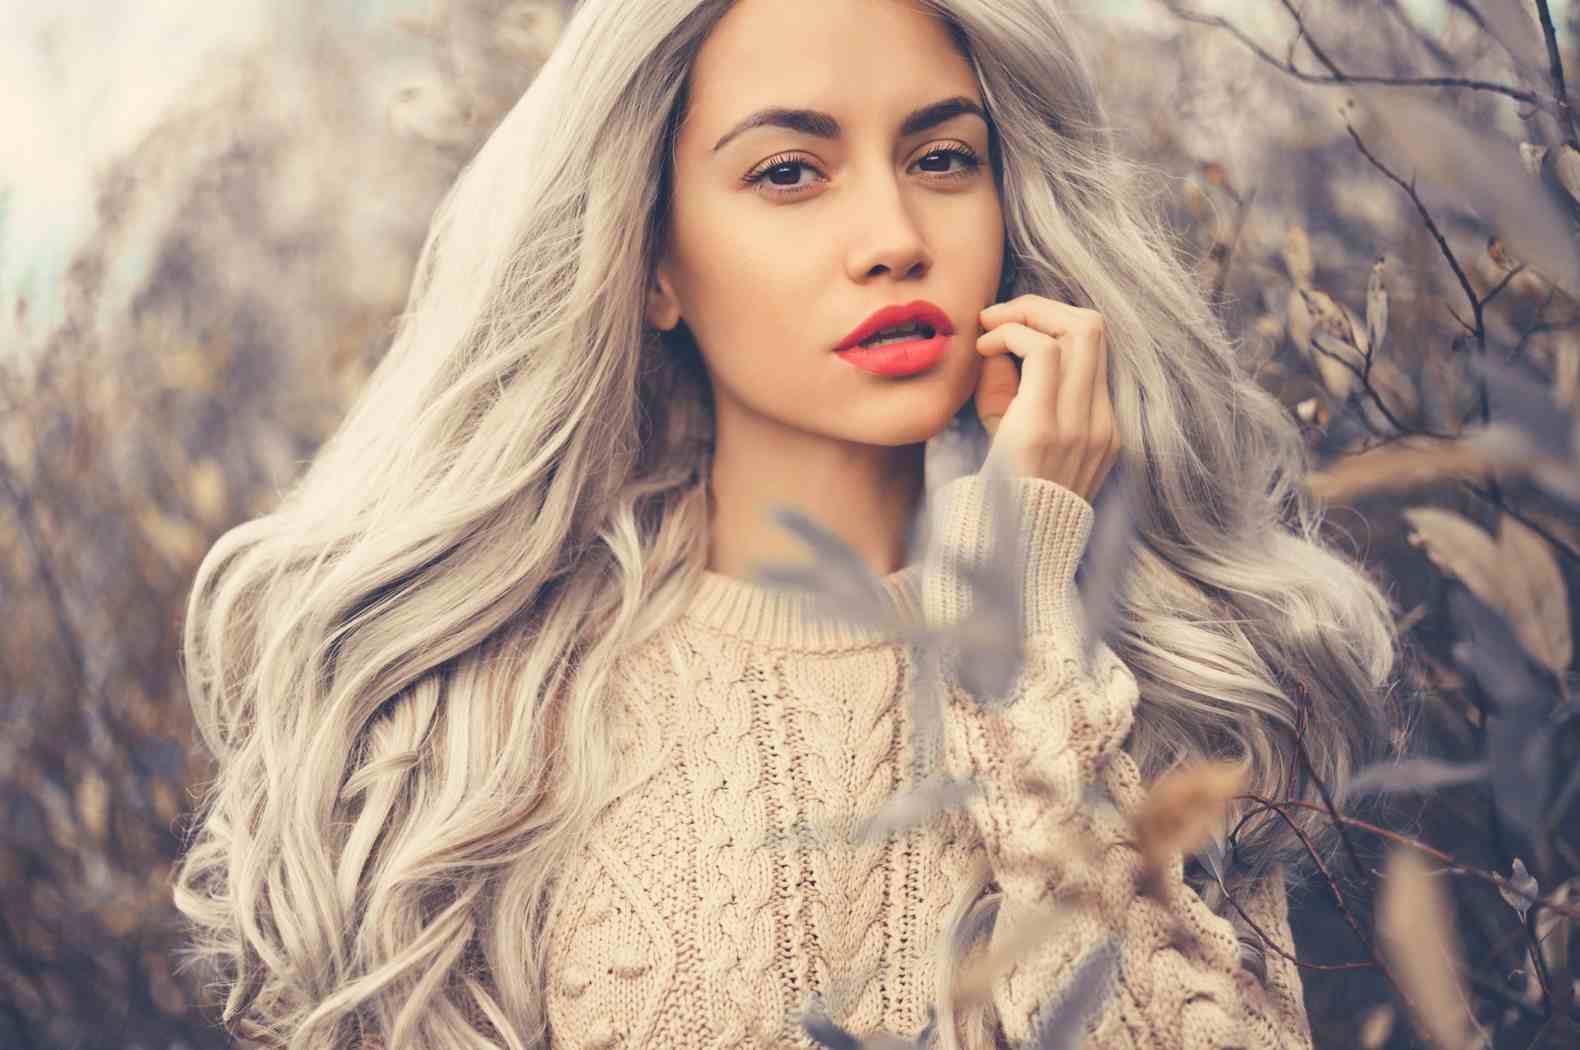 Haare Silber Farben 70 Inspirationen Und Die Besten Pflegetipps